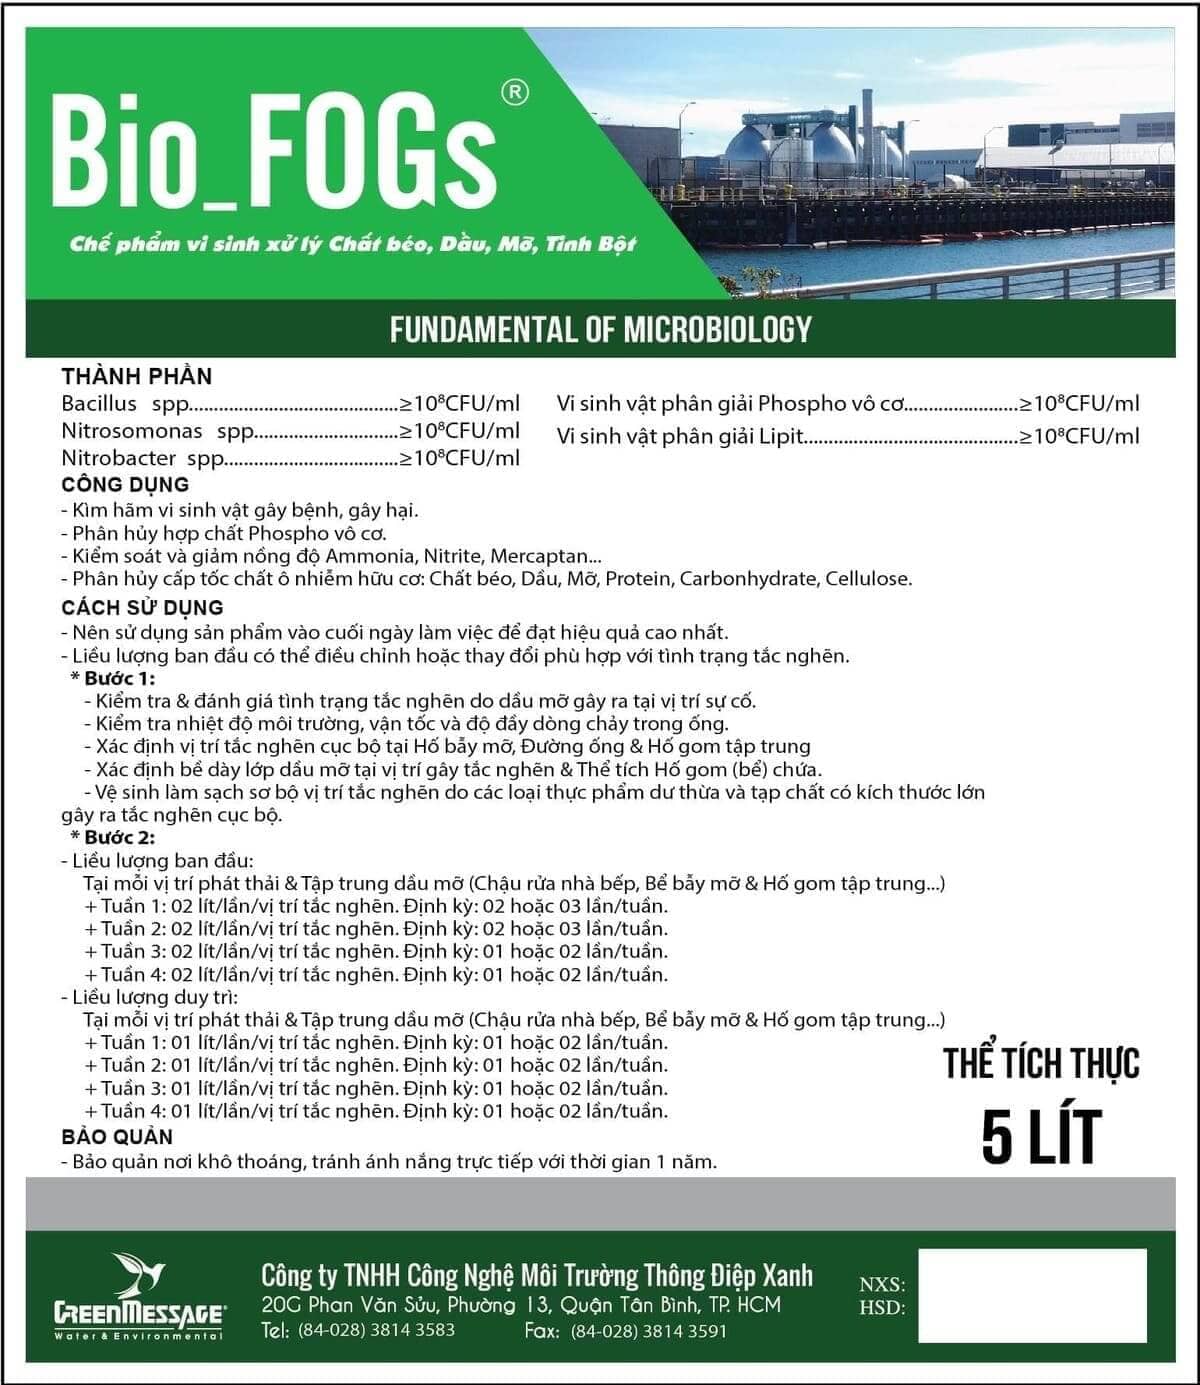 Bio_FOGs - Chế phẩm vi sinh xử lý chất béo, dầu mỡ, tinh bột